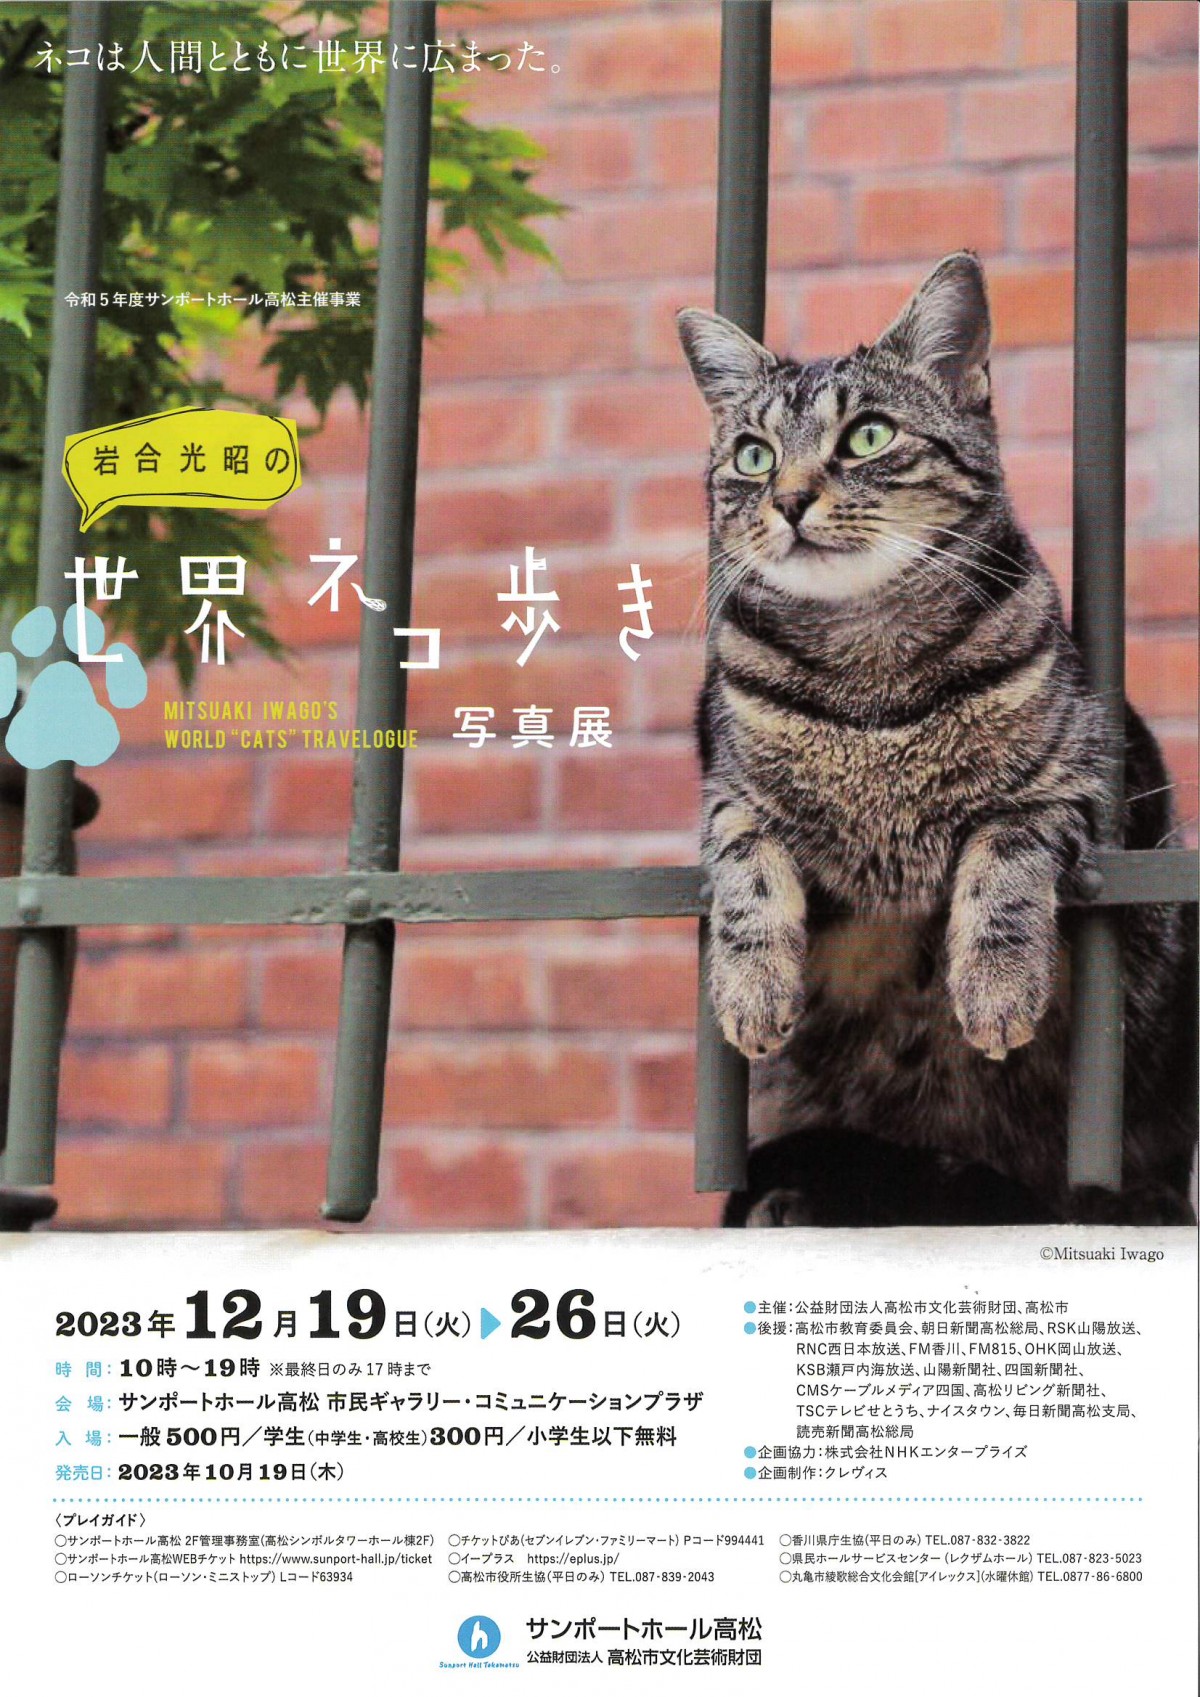 岩合光昭の世界ネコ歩き写真展